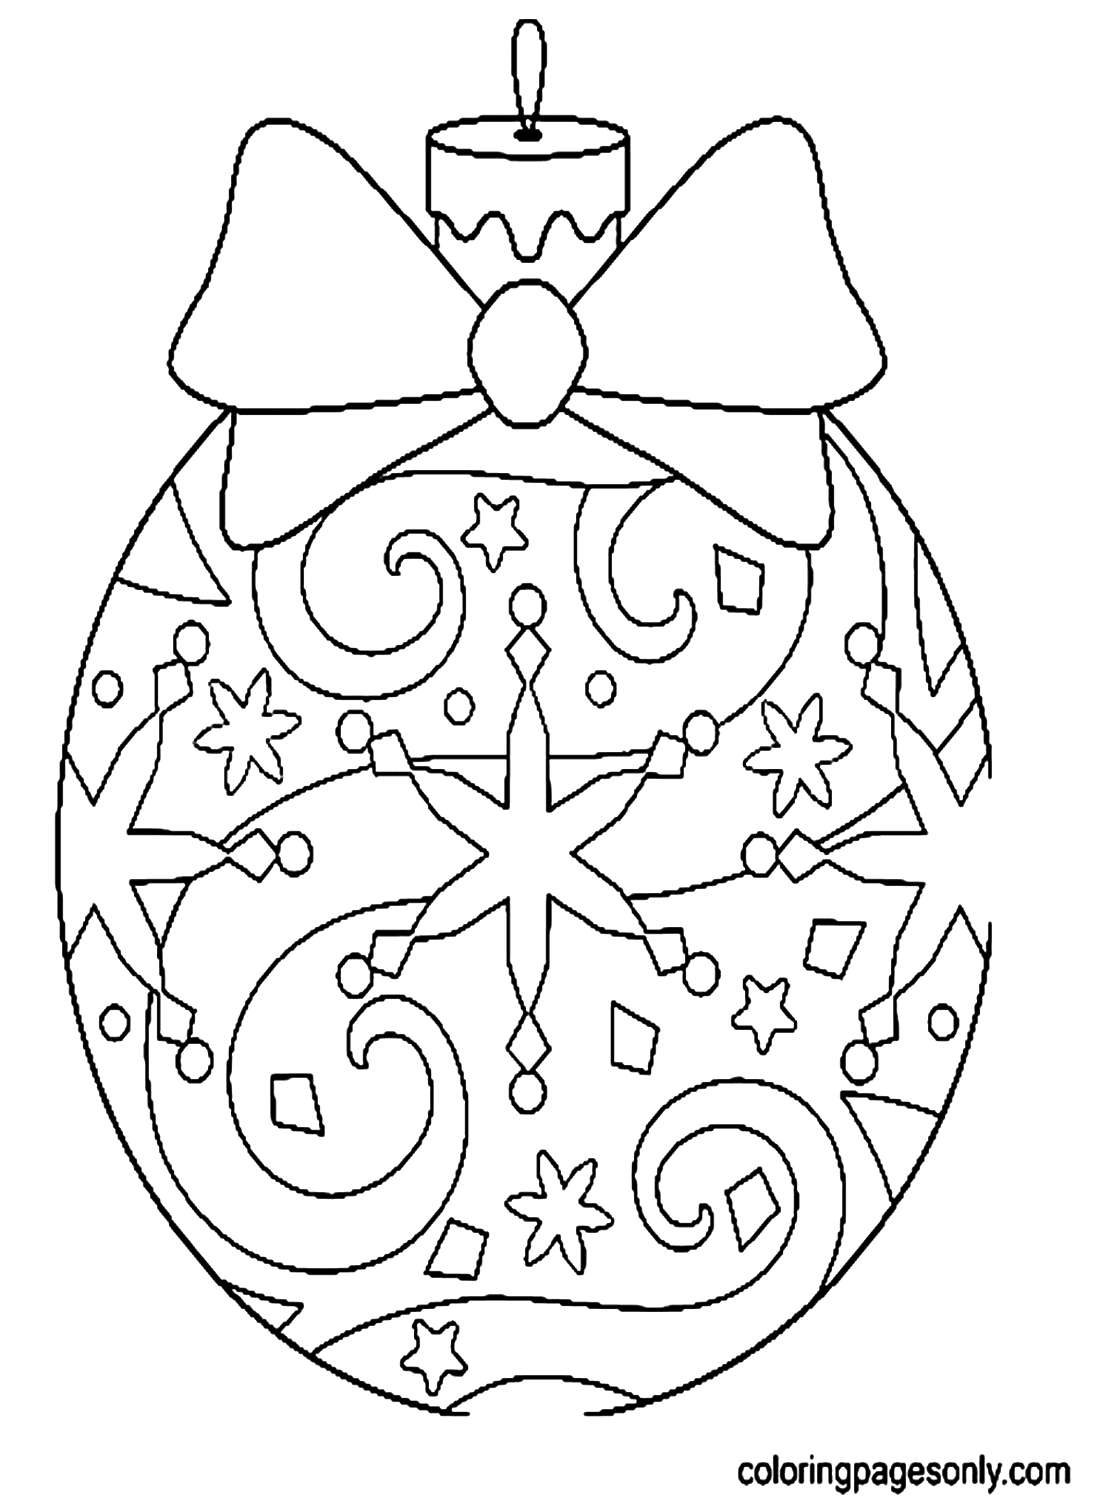 Елочный шар с бантом из елочных украшений